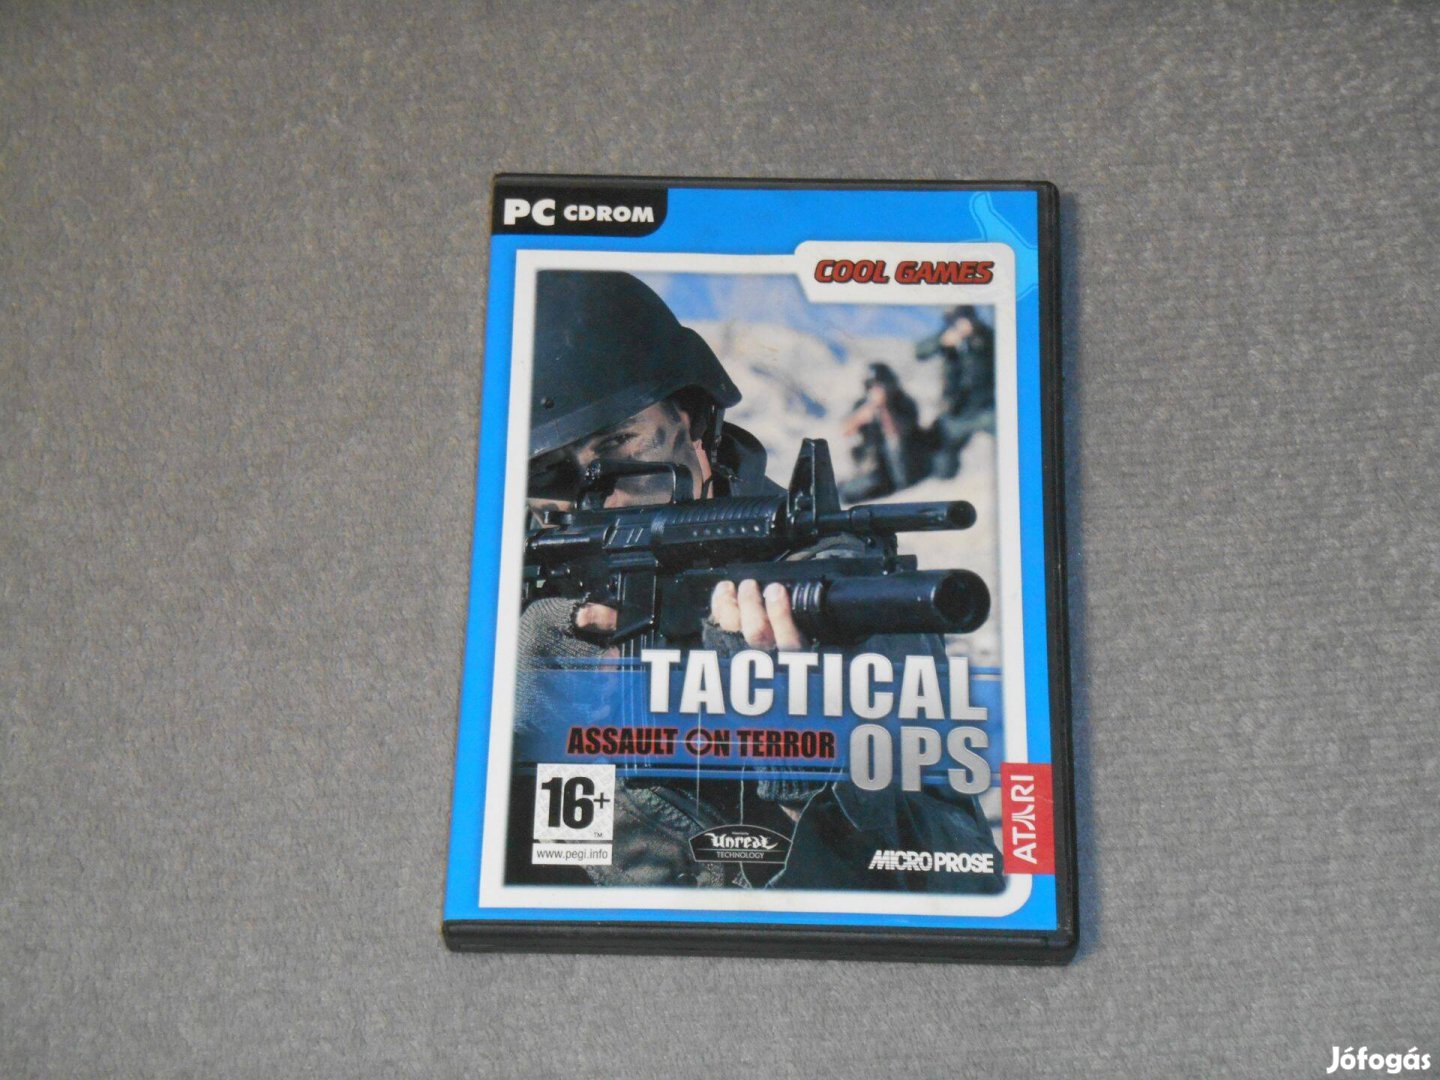 Tactical Ops - Assault on Terror Számítógépes PC játék